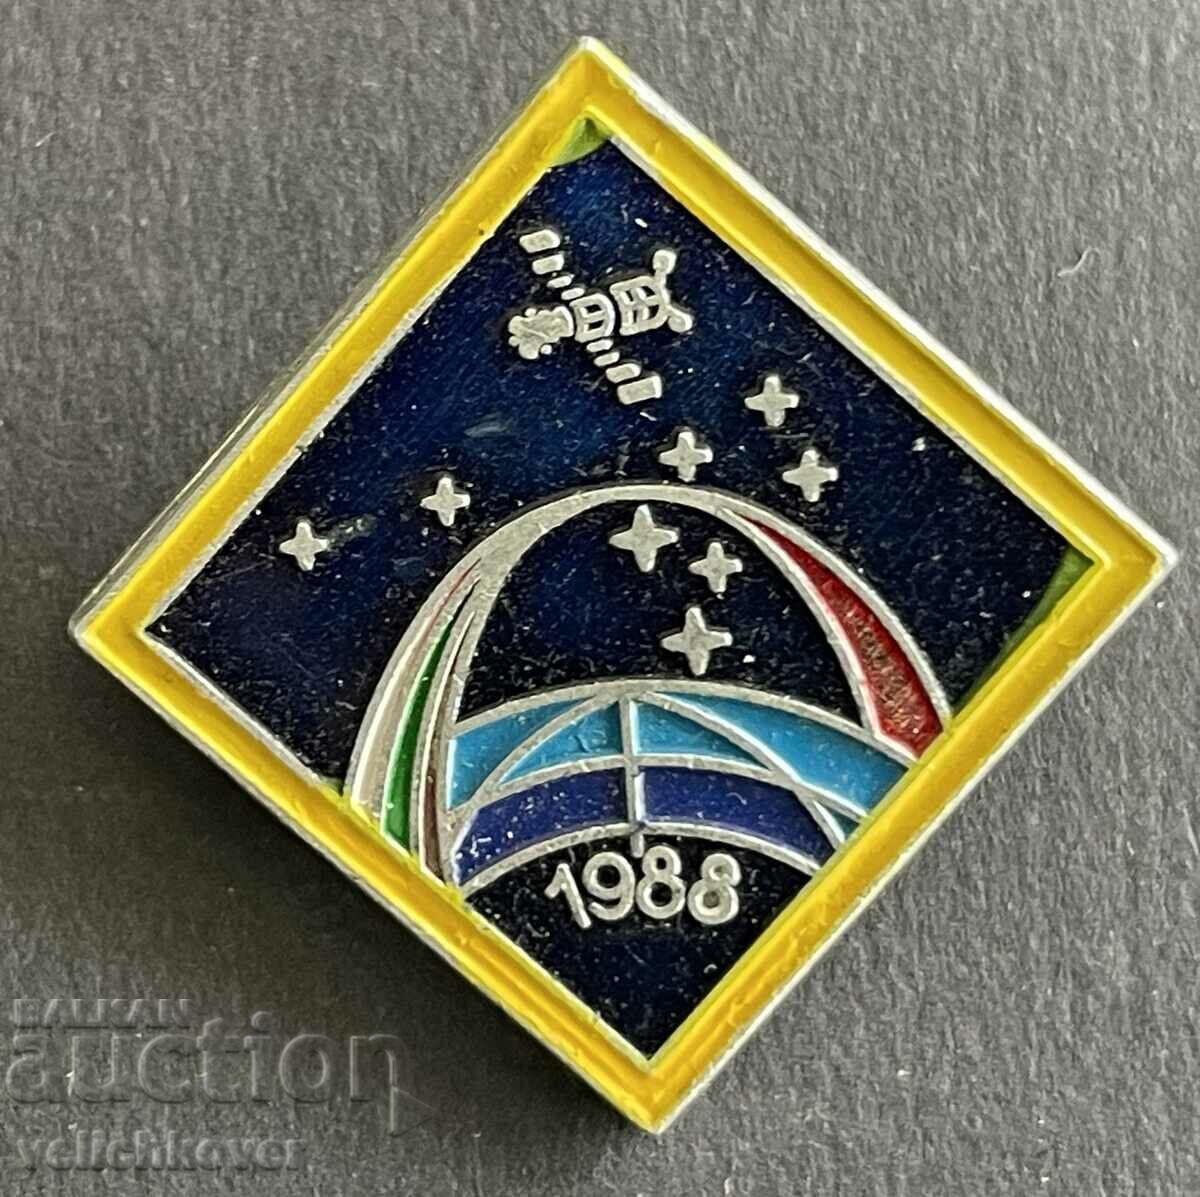 37331 Βουλγαρία ΕΣΣΔ υπογράφει δεύτερη κοινή διαστημική πτήση μέσα